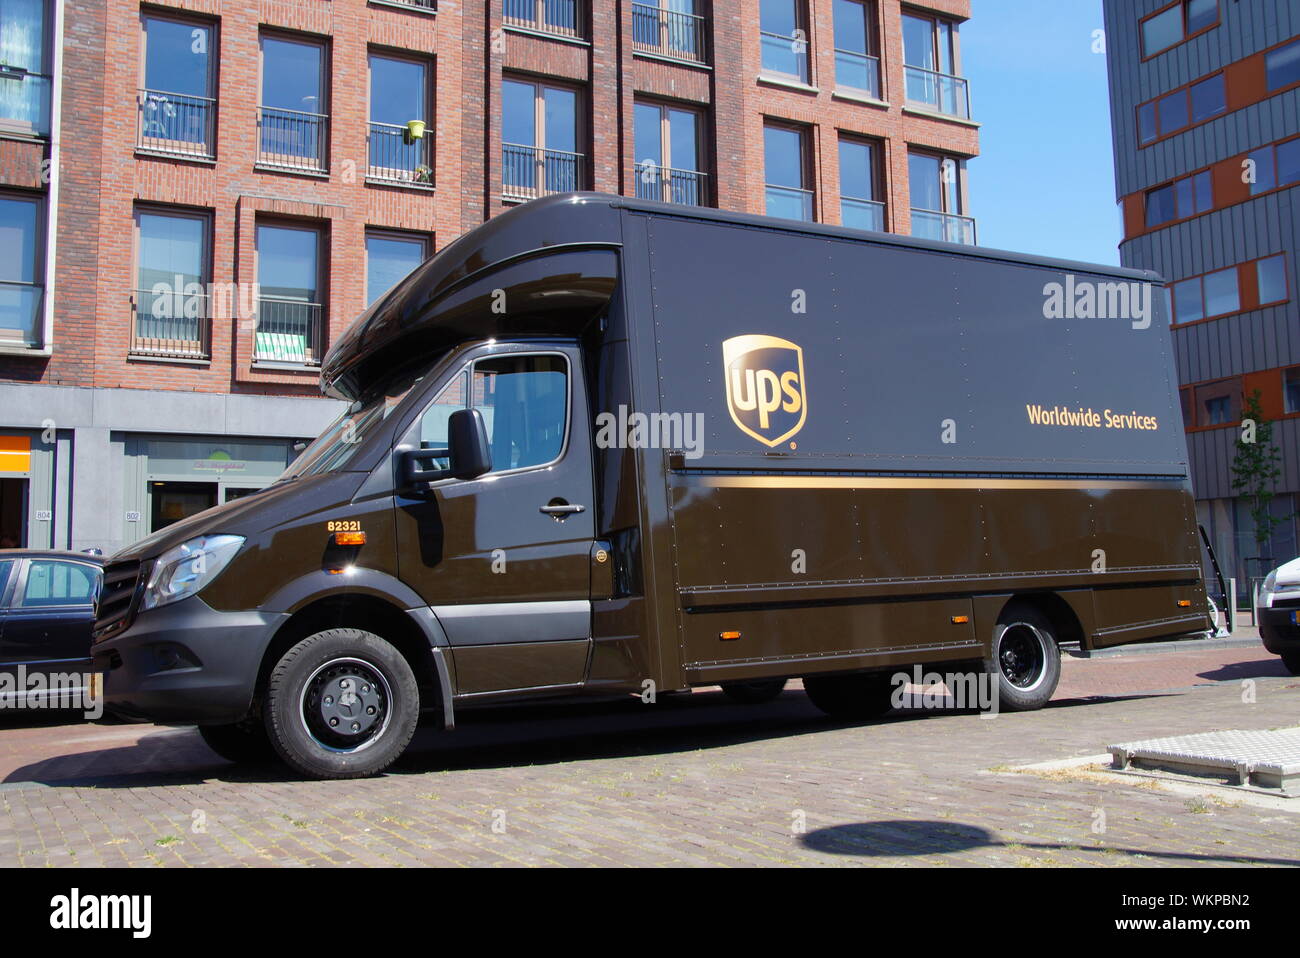 Almere Poort, Flevoland, Pays-Bas - le 13 mai 2016 : camion de livraison UPS garé sur le côté de la route en face d'un bâtiment. Banque D'Images